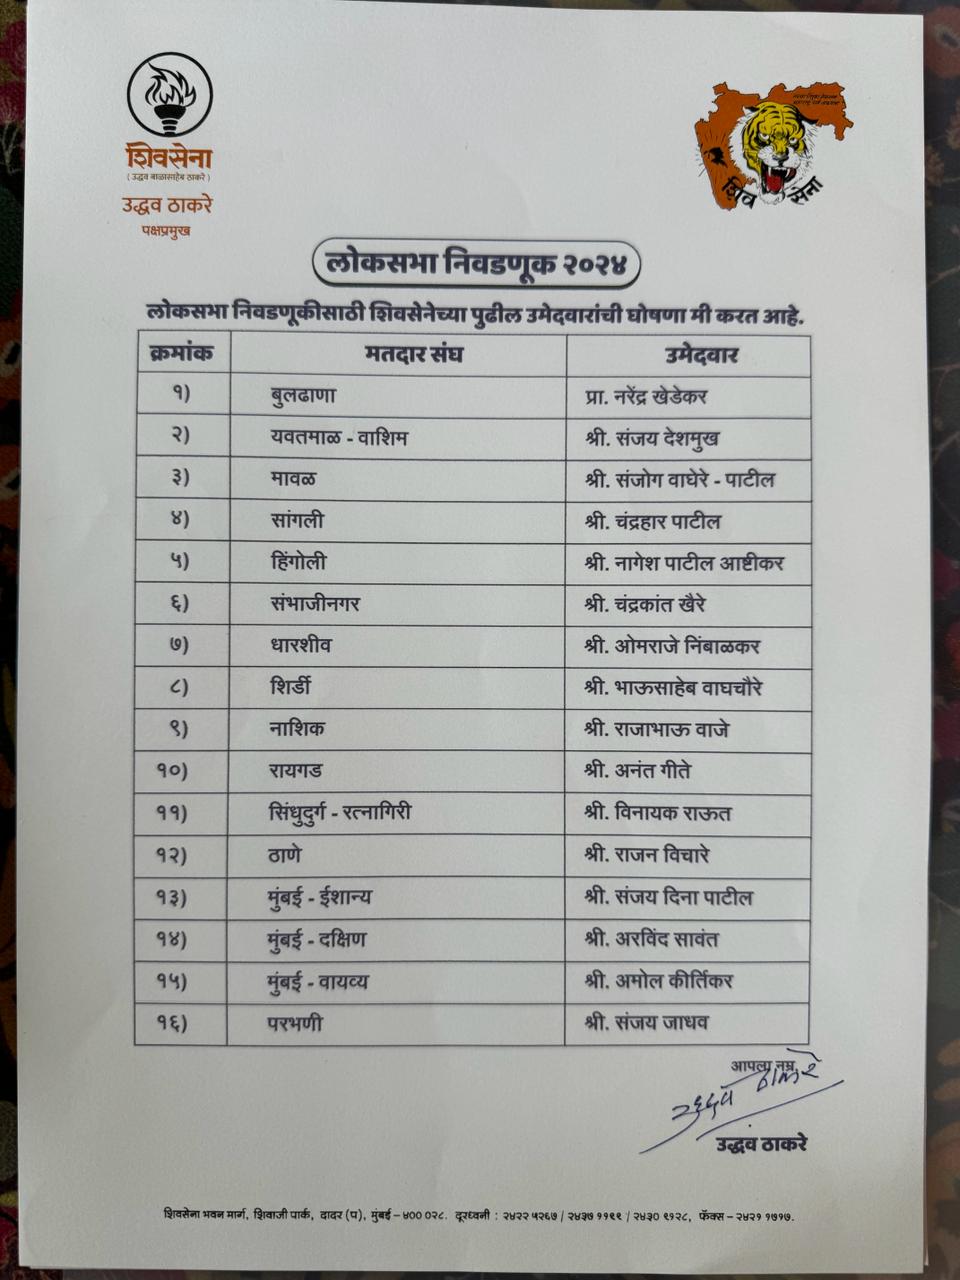 UBT Shiv Sena Candidates List: उद्धव ठाकरे ने जारी की शिवसेना उम्मीदवारों की लिस्ट, जानिए किसे मिला टिकट